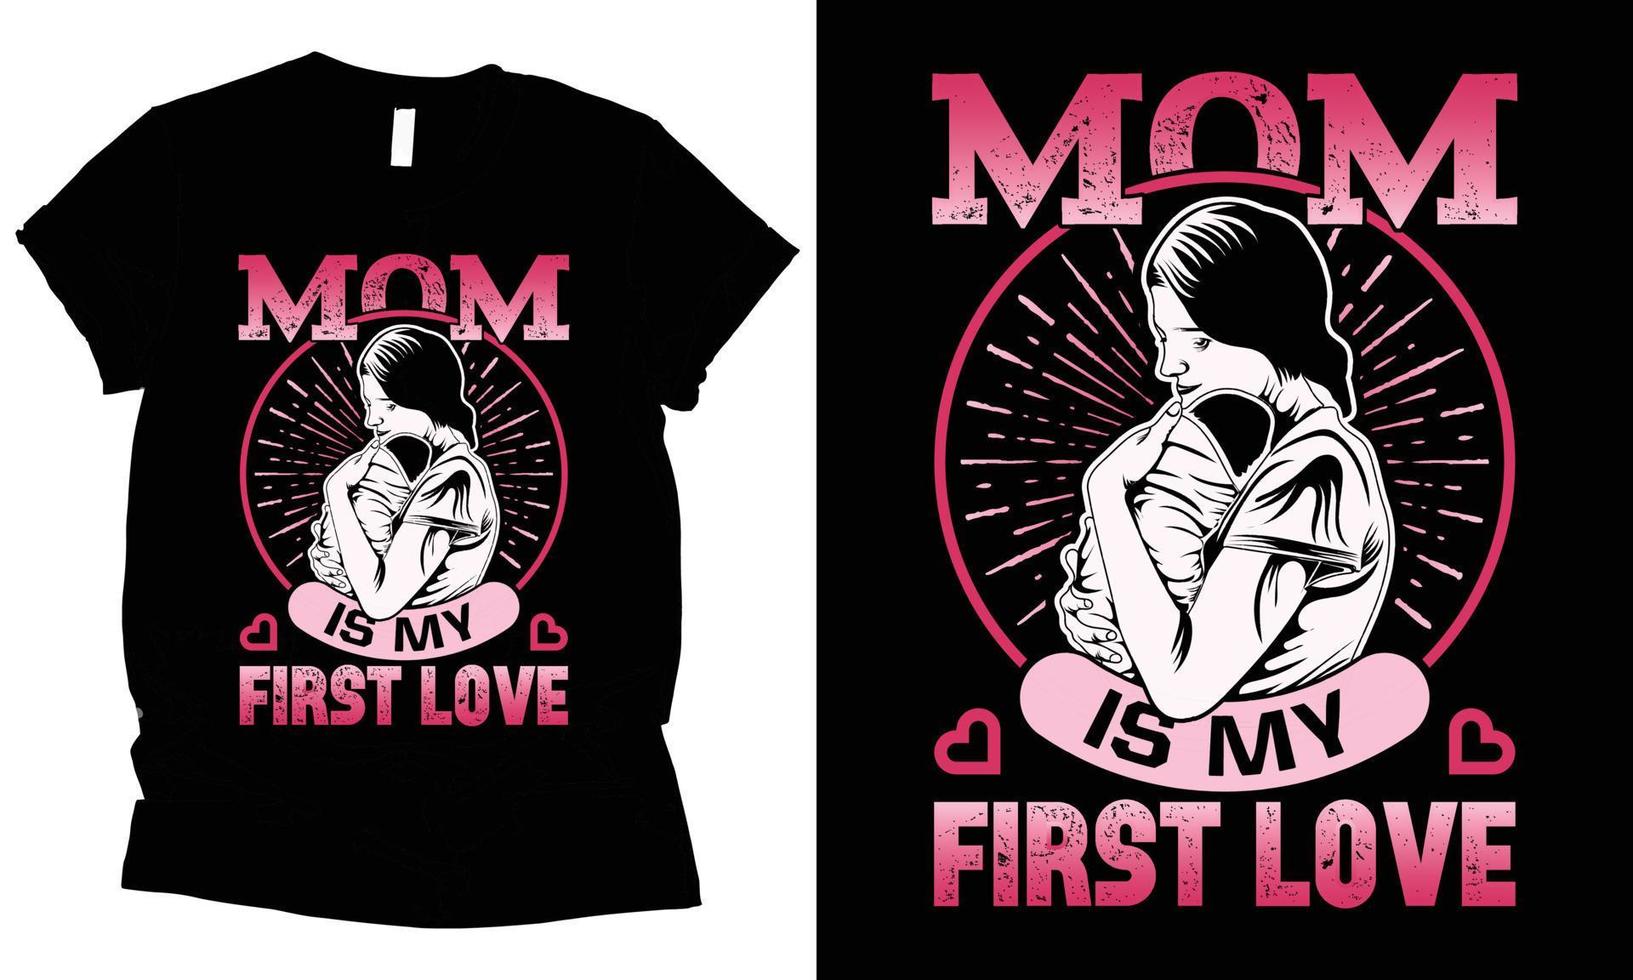 maman est mon premier aimer, de la mère journée vecteur T-shirt conception